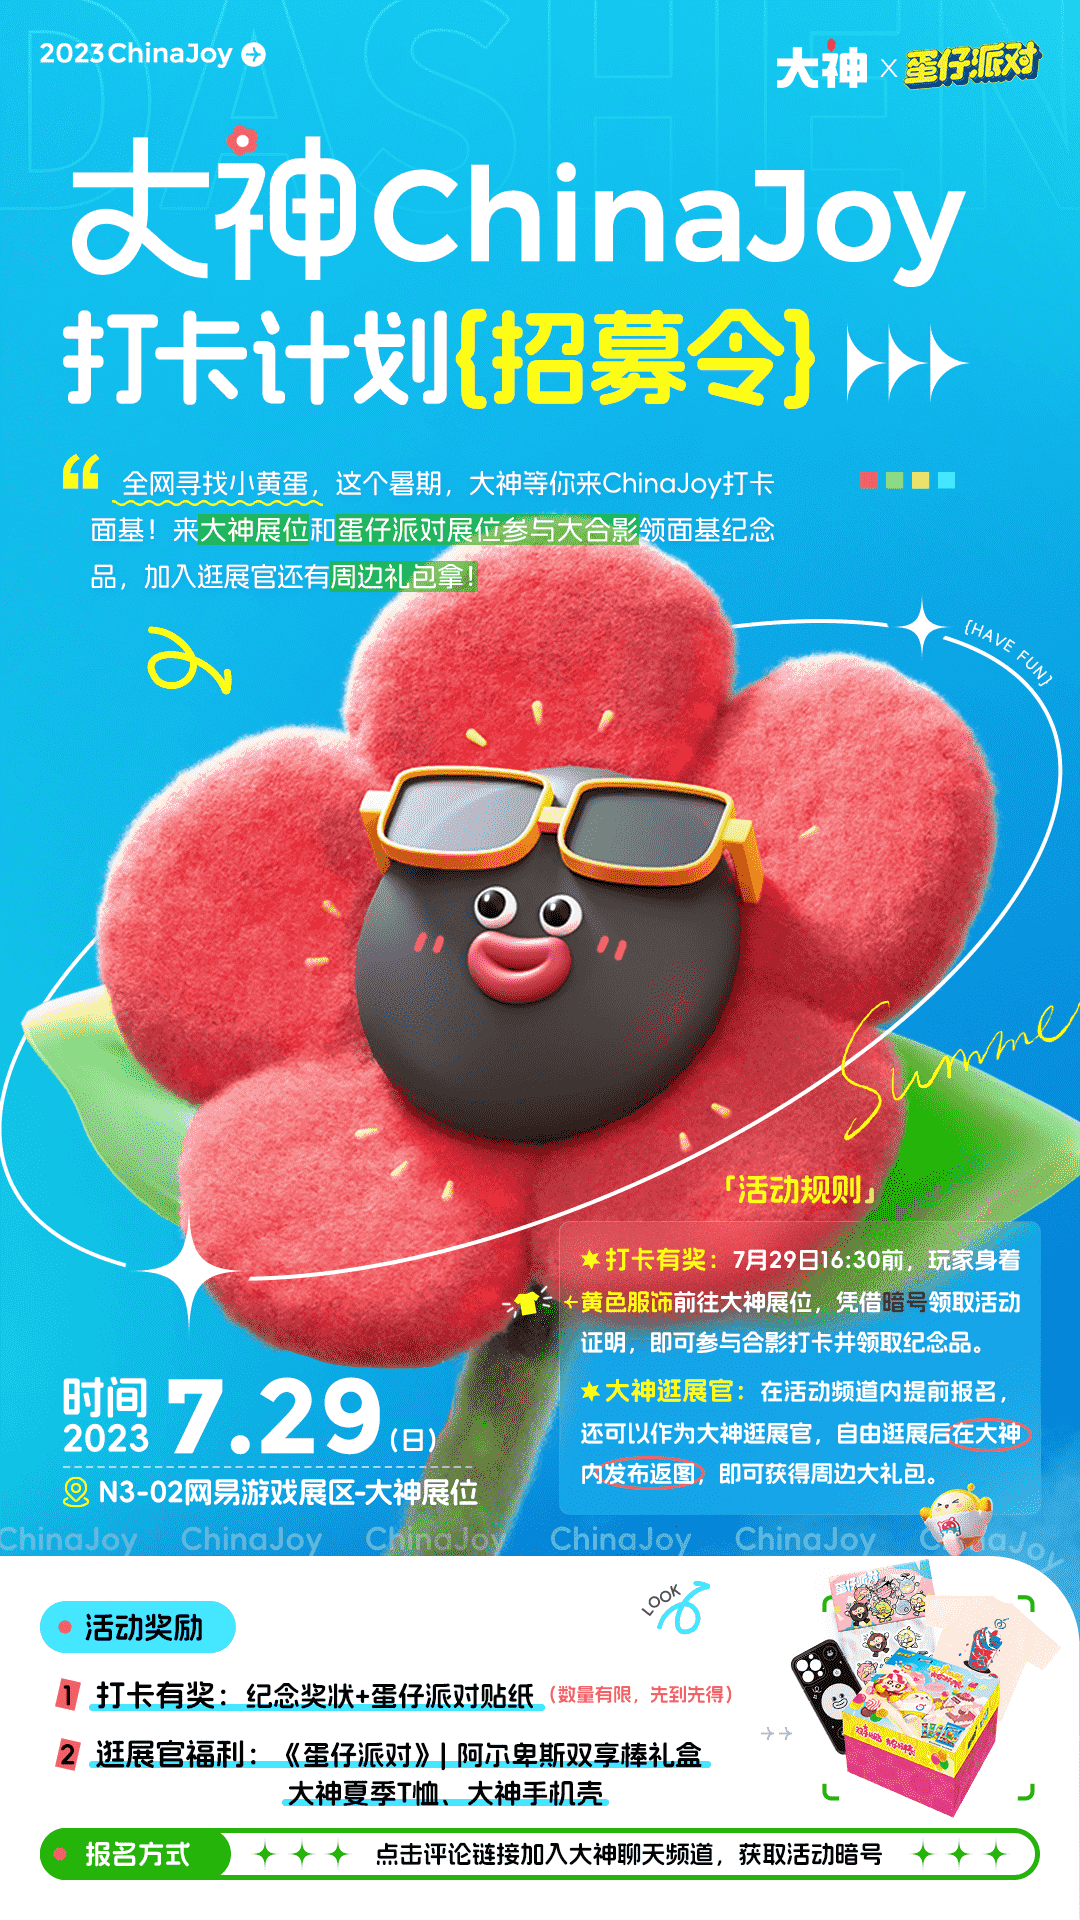 2023上海Chinajoy展览震撼来袭，大神摊位活动抢先看，超多游戏等你来玩！